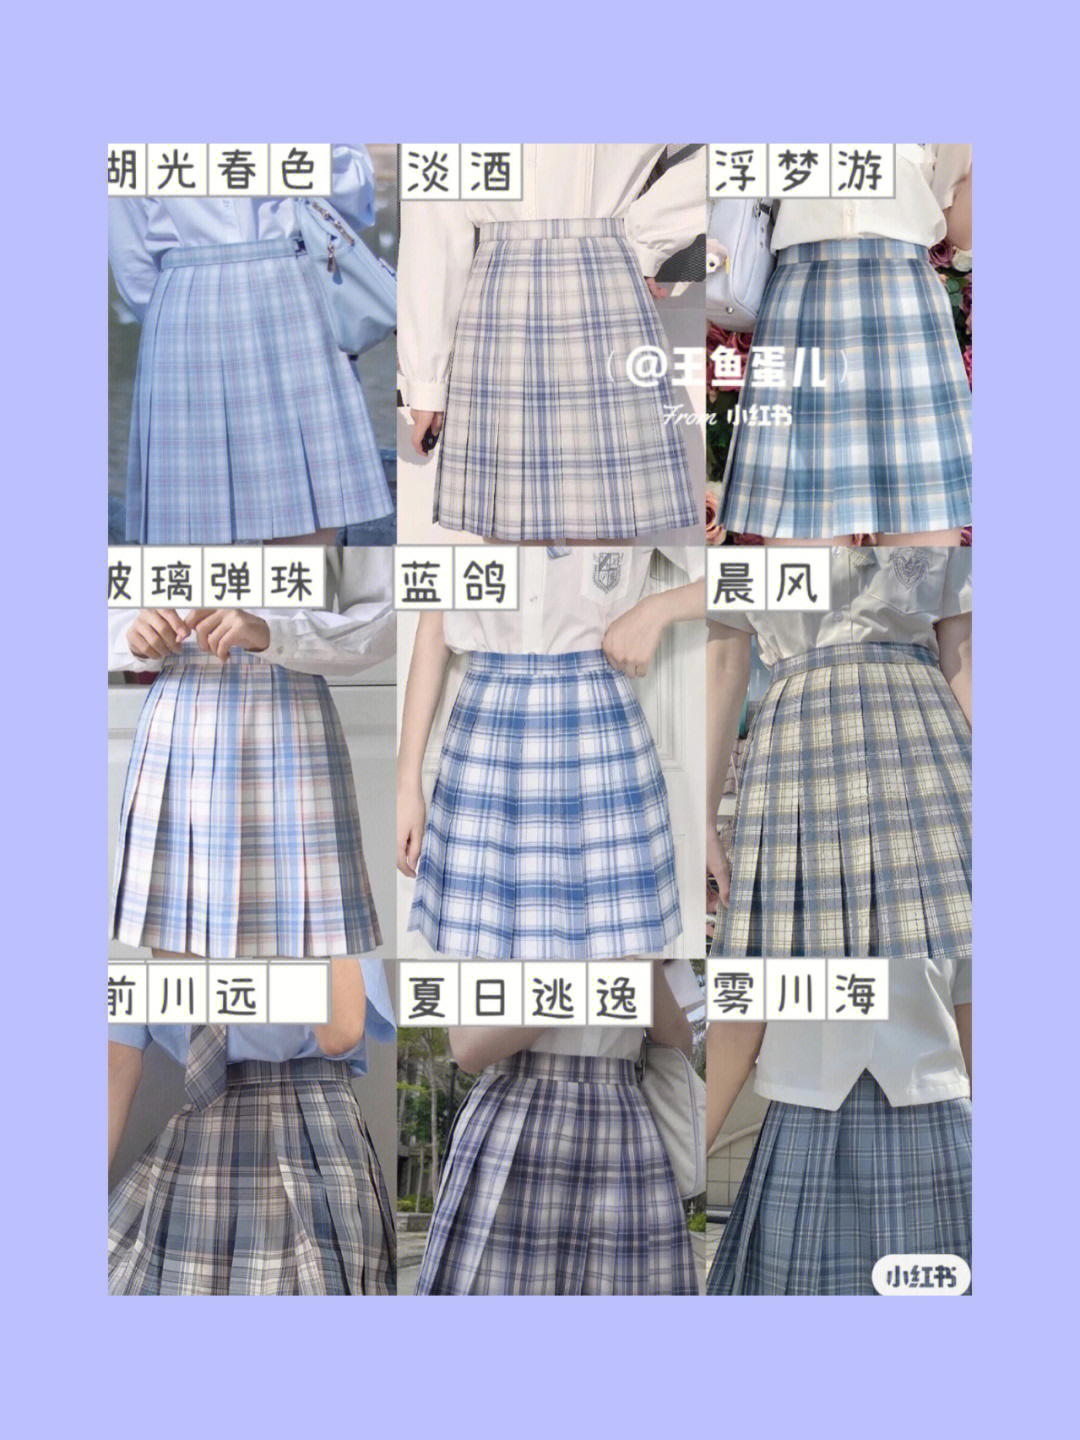 jk裙子的所有款式名字图片